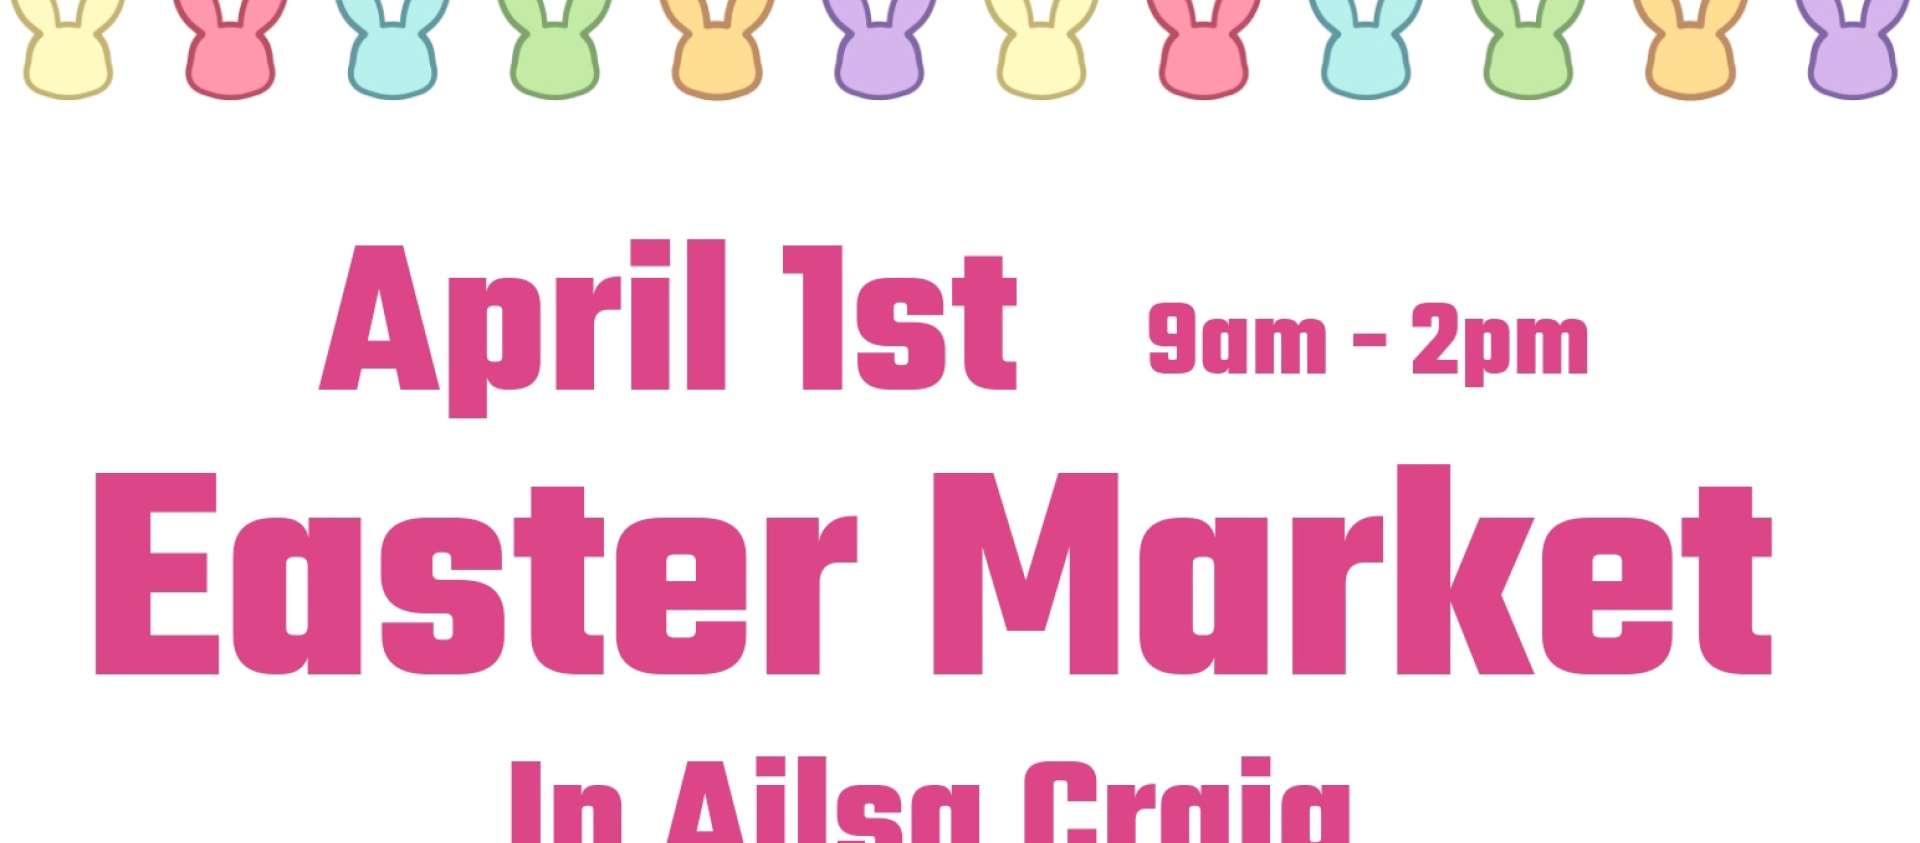 Ailsa Craig Easter Market